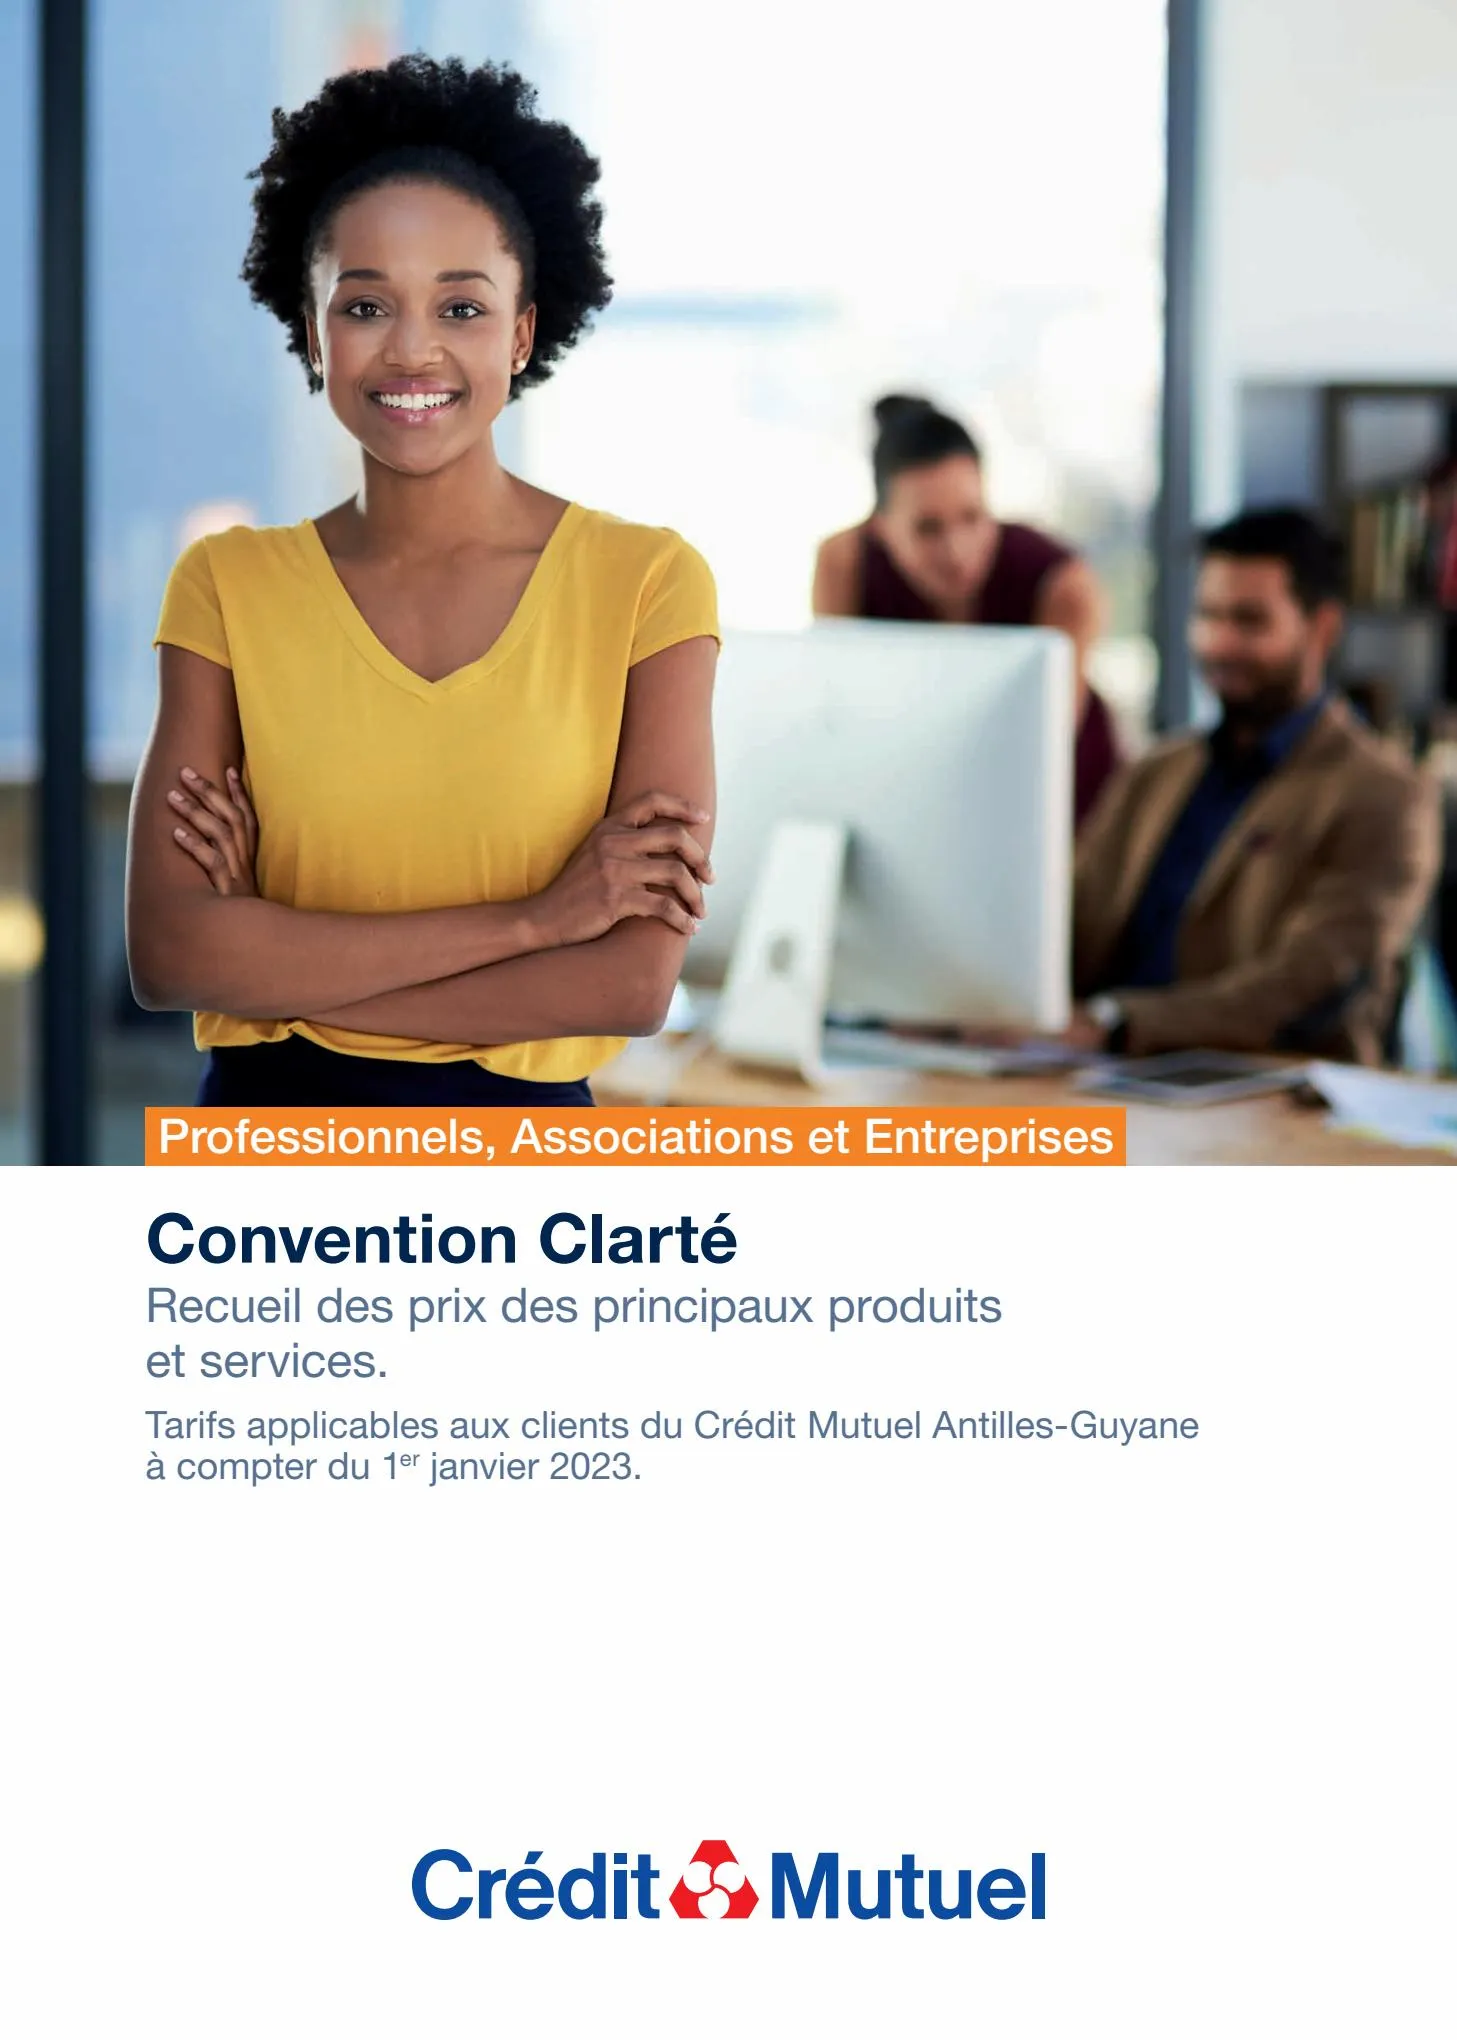 Catalogue Convention Clarté professionnels, agriculteurs, associations et entreprises CMAG, page 00001